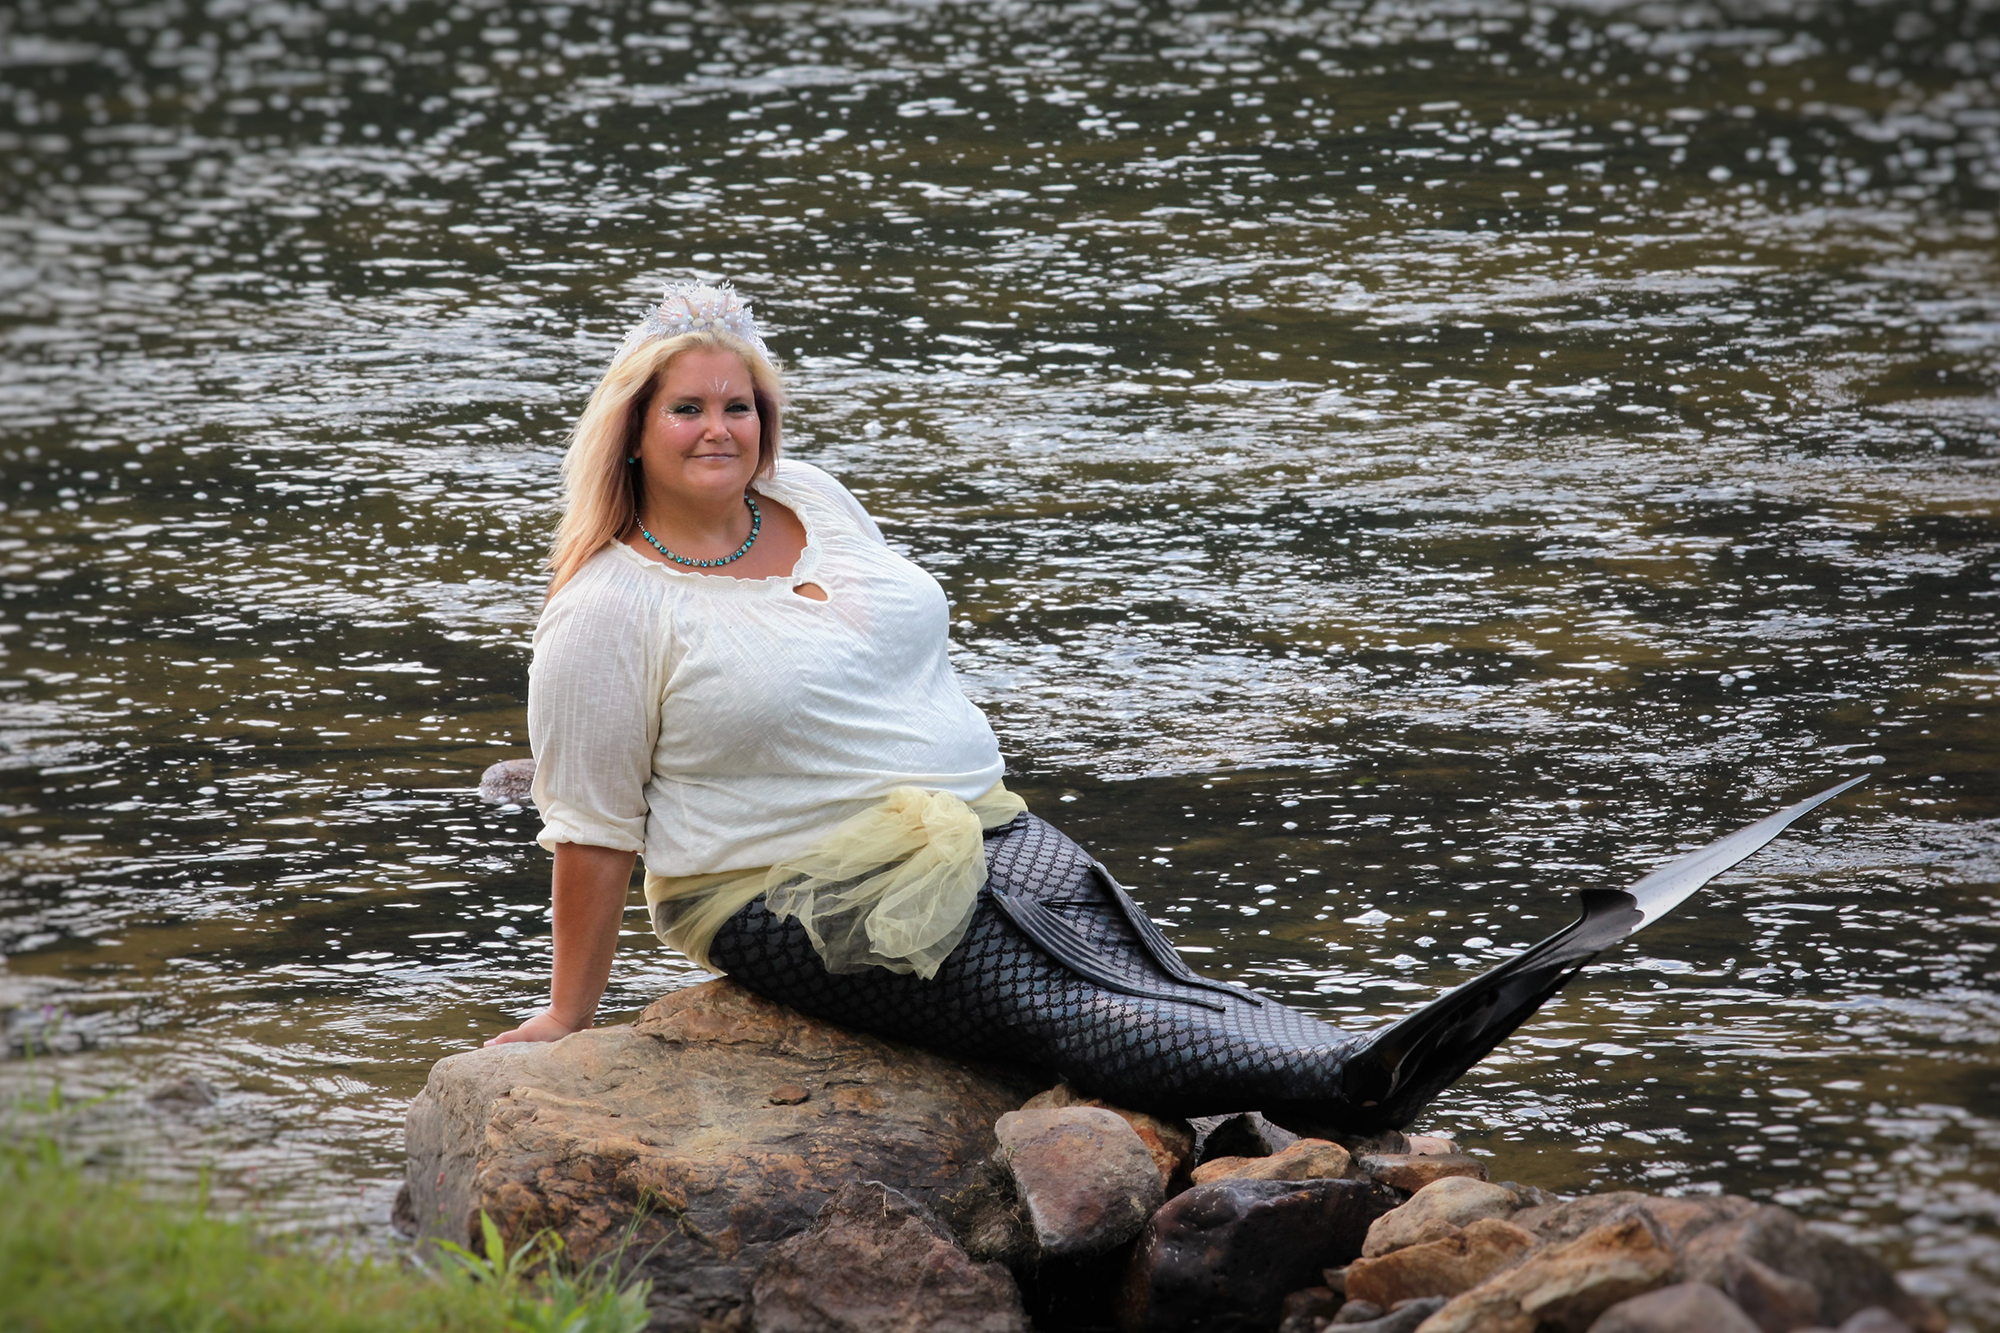 Model Monday – Mermaid Cindy Sexton